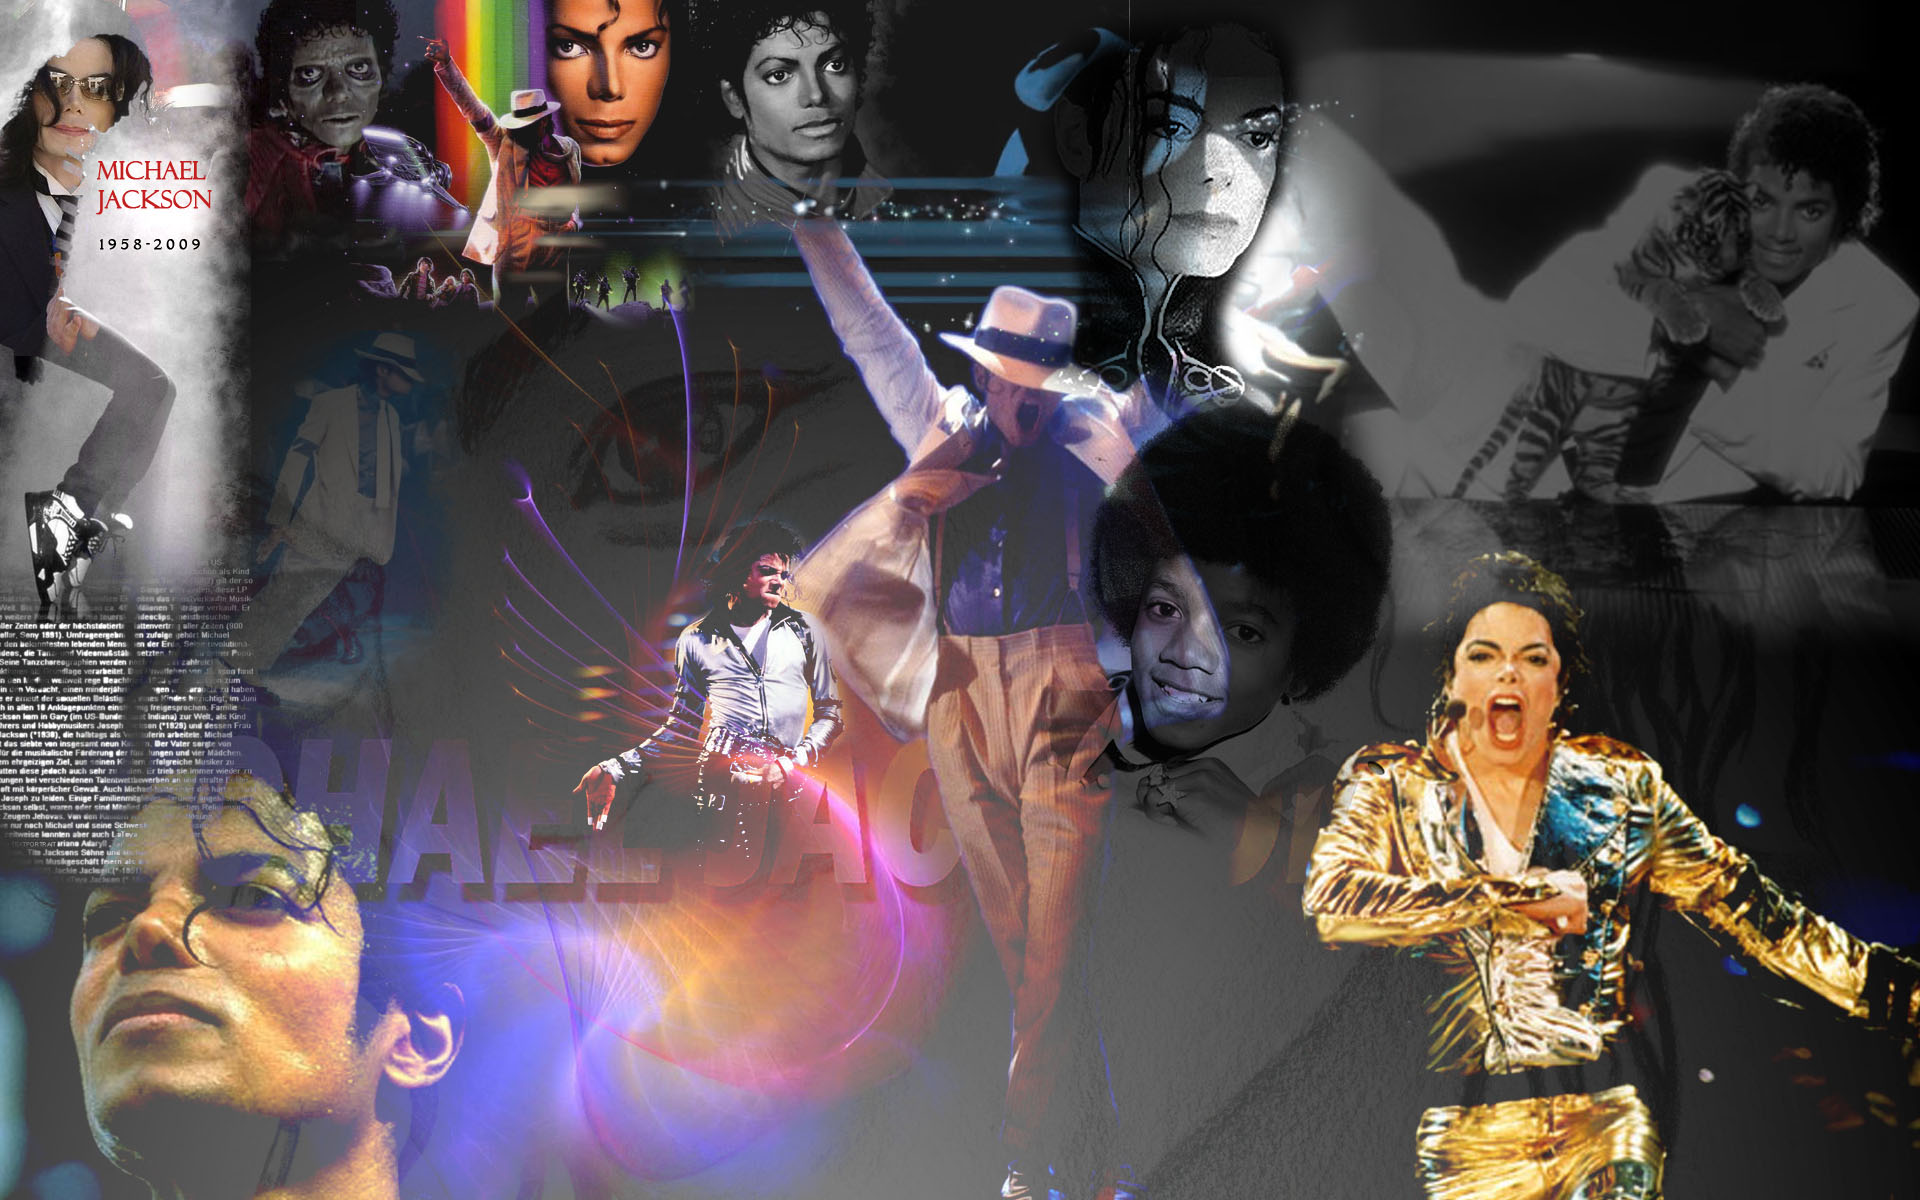 Michael Jackson Background Image